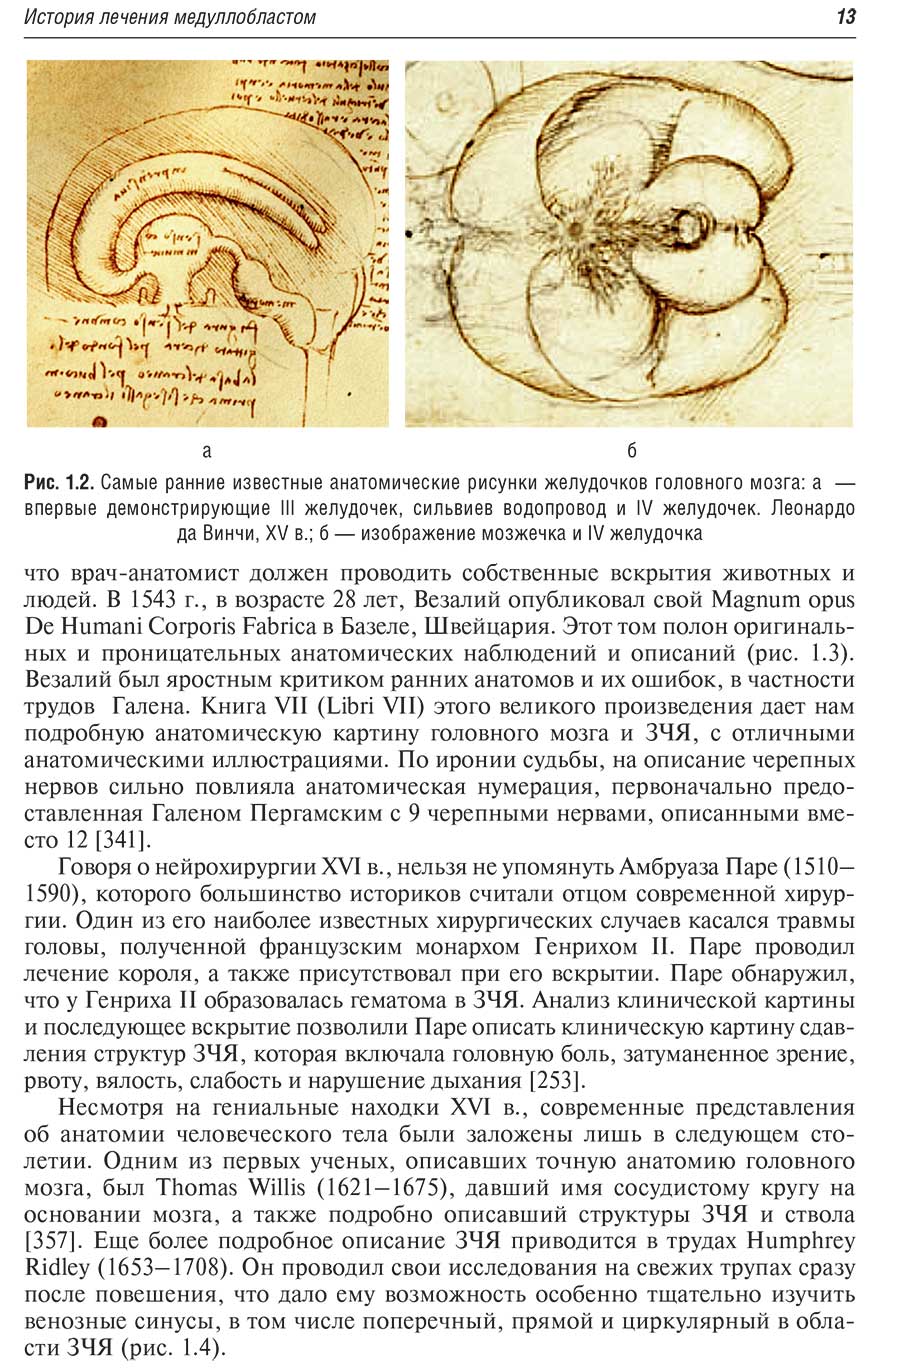 Самые ранние известные анатомические рисунки желудочков головного мозга